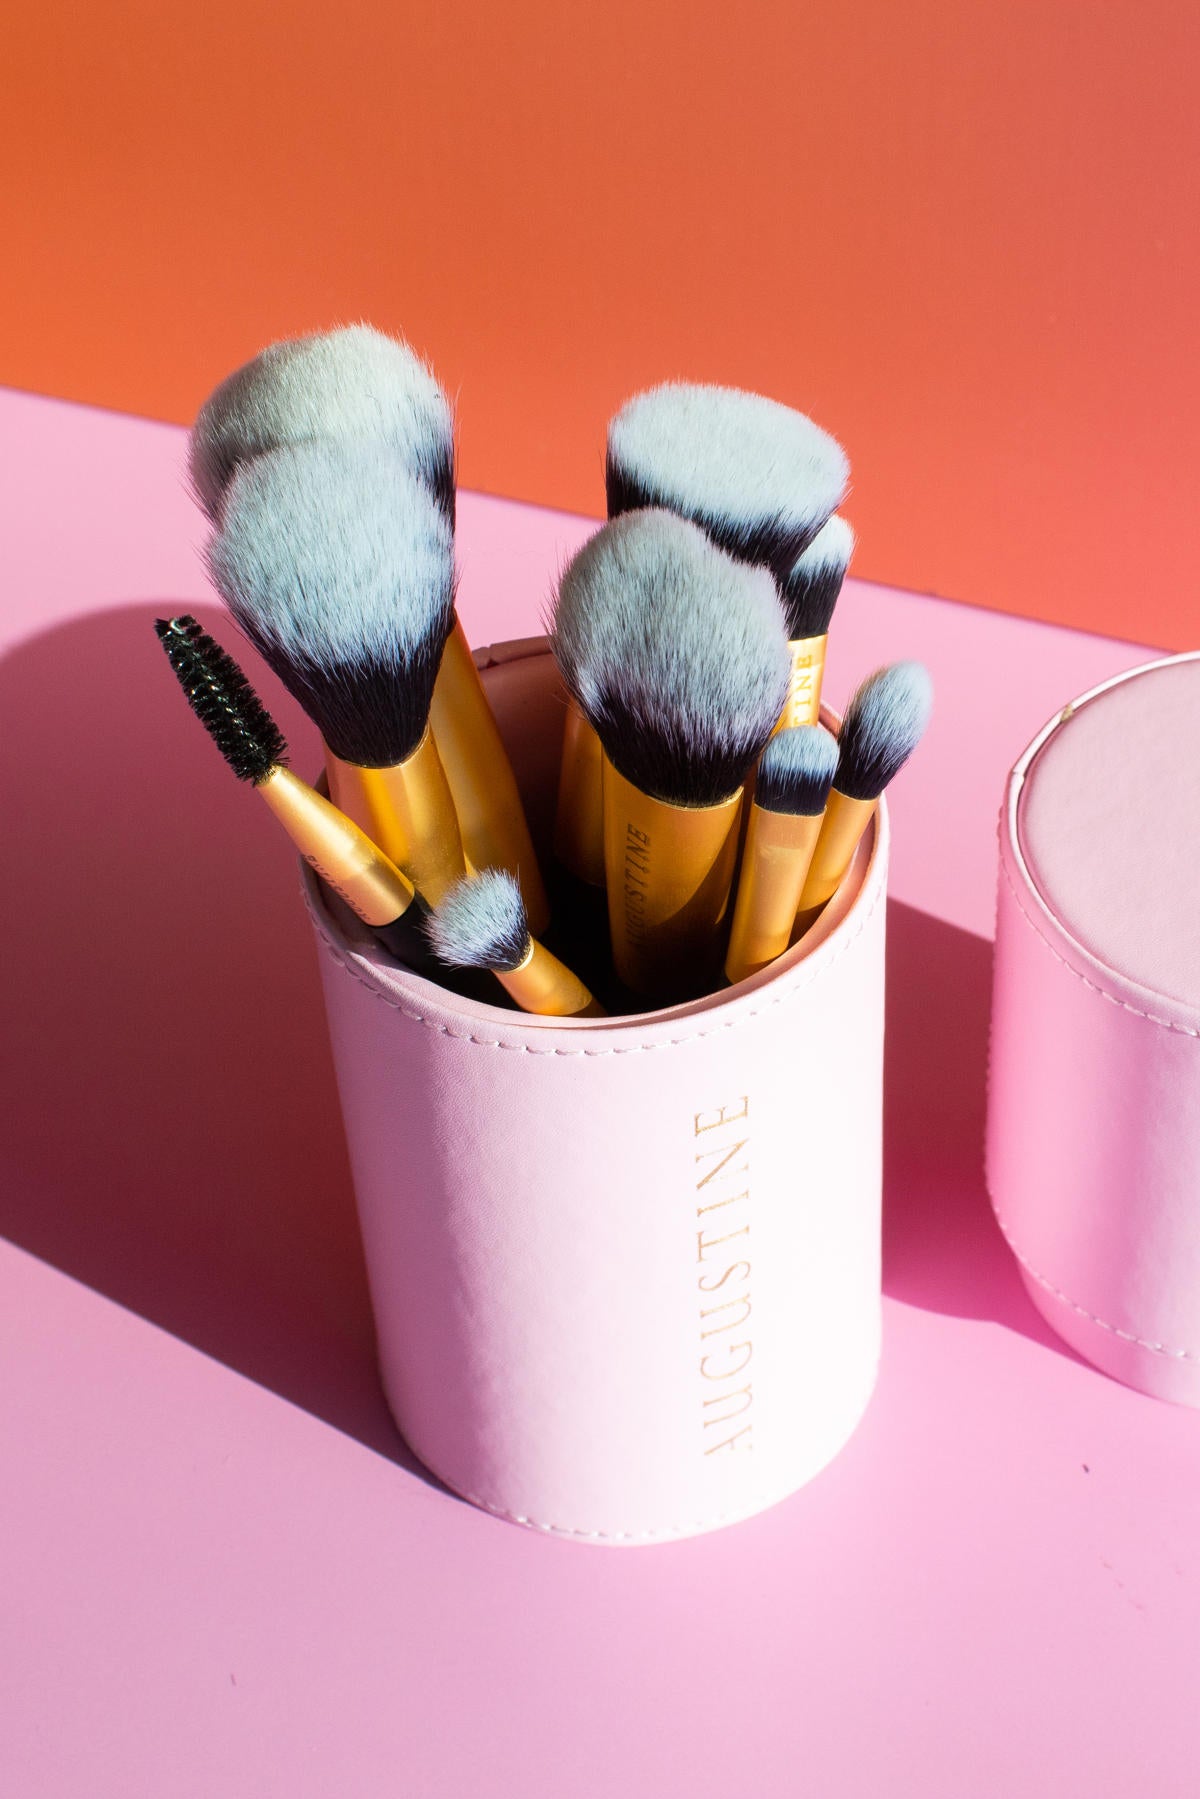 9 peice make up brush set in pink case